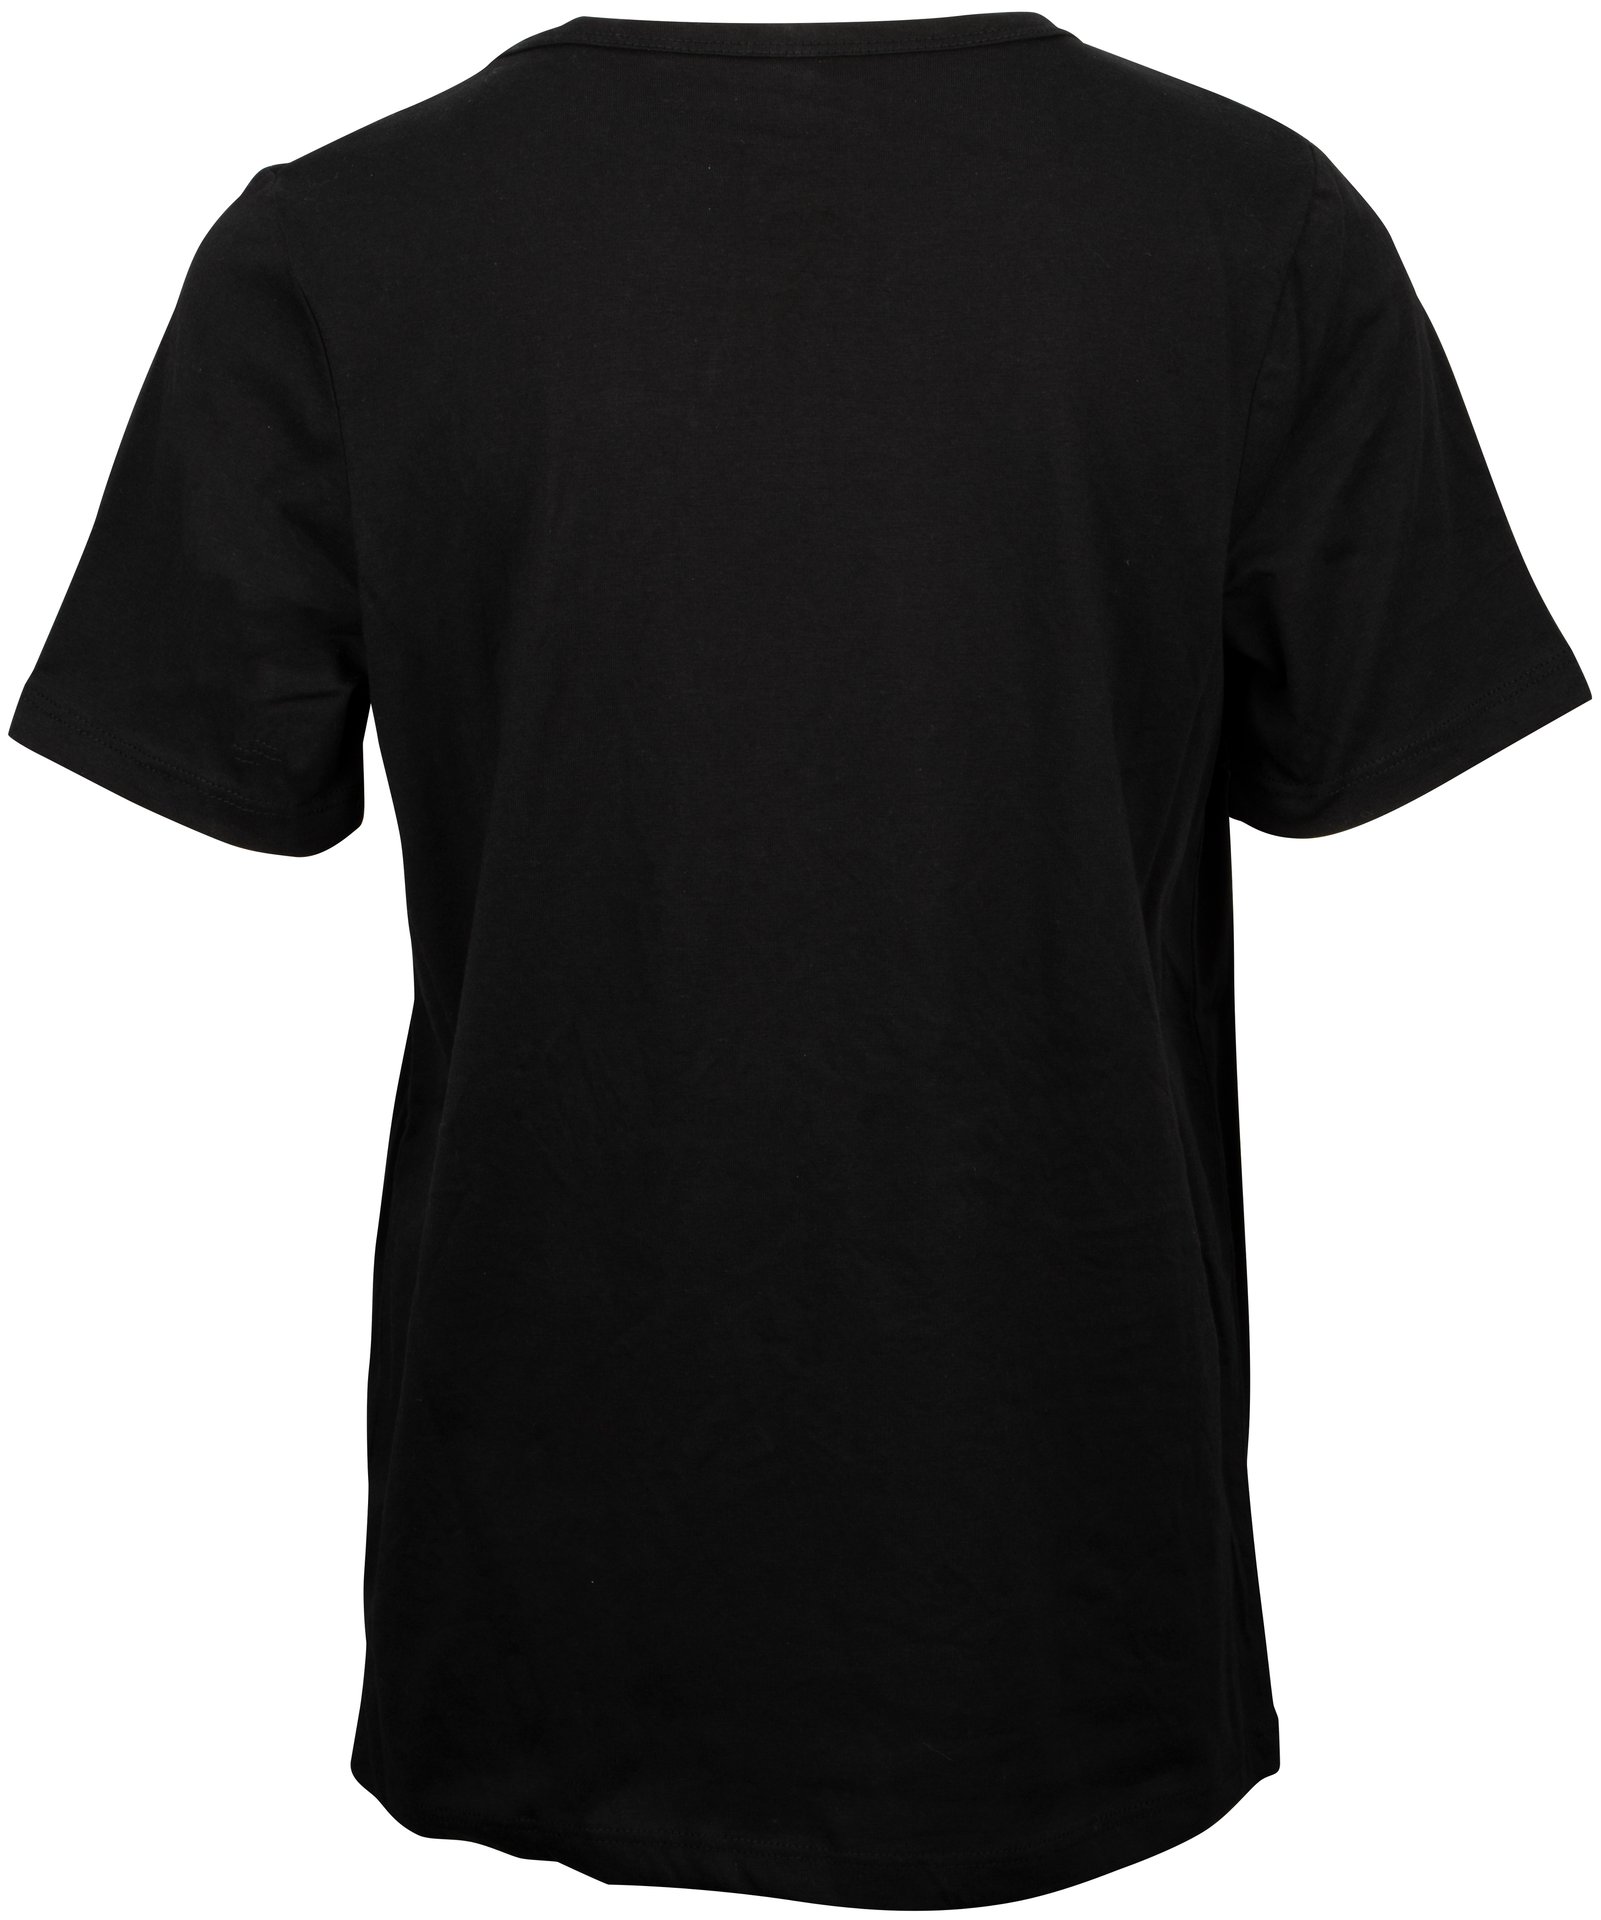 T-Shirt Jr - Emblem Black